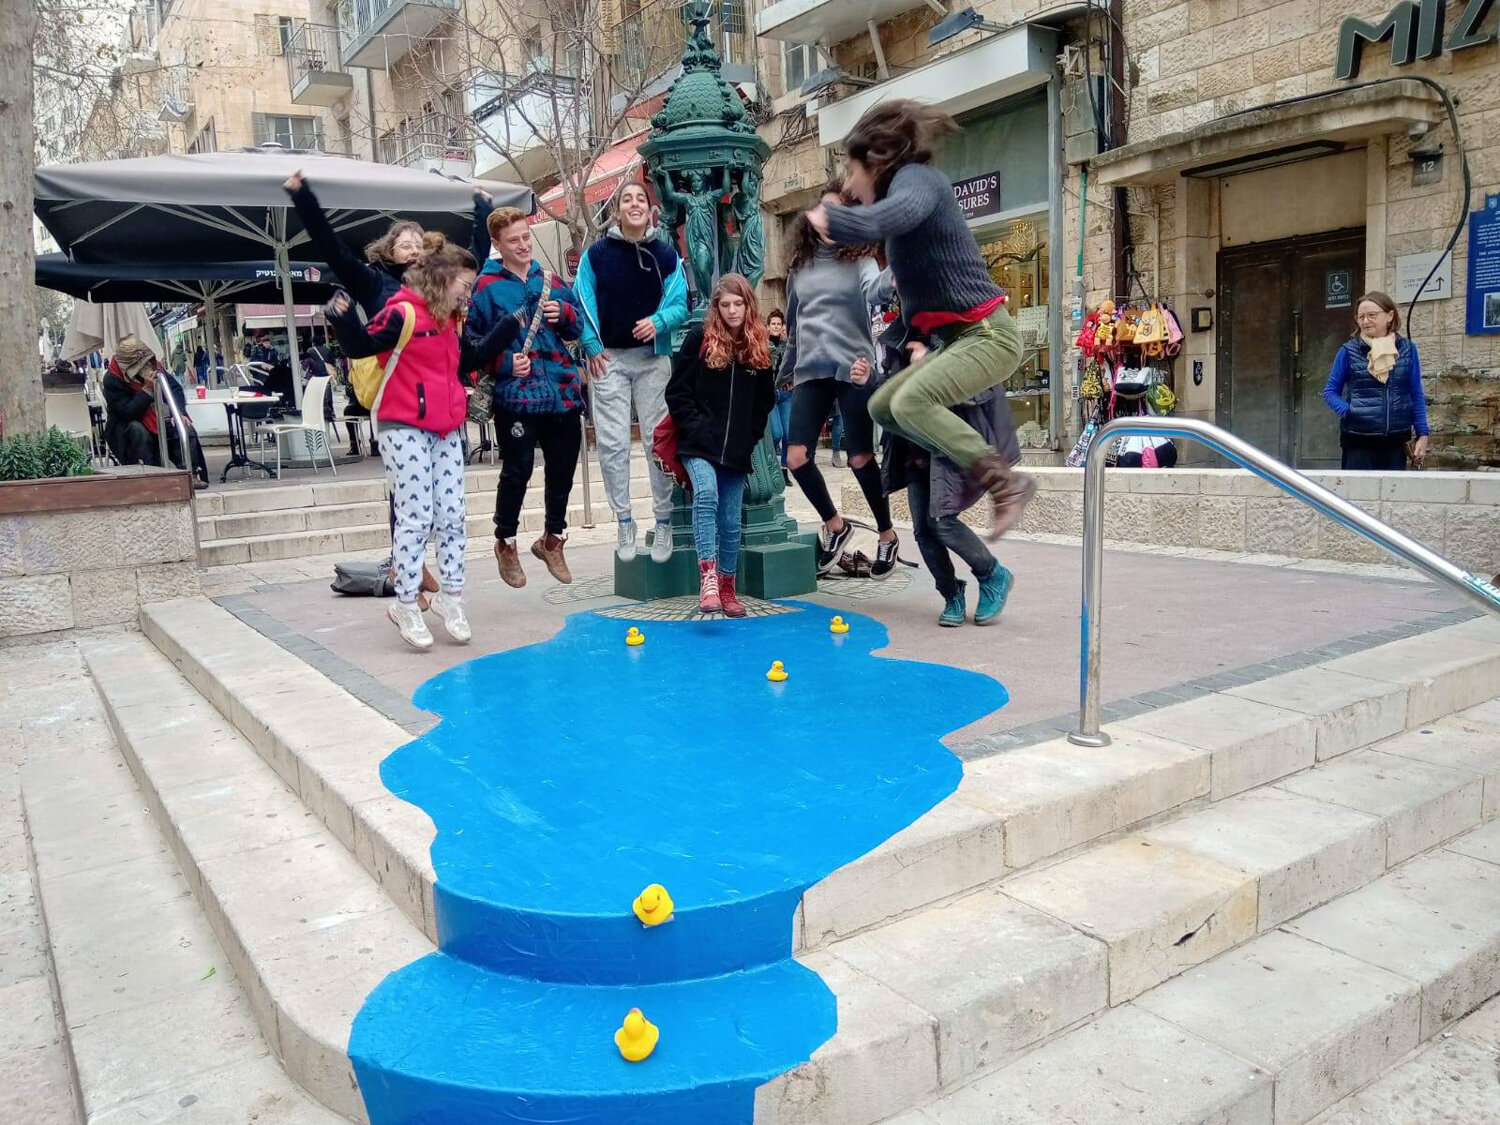 שלוליות עם תלמידי תיכון ליפתא במסגרת פרוייקט פלייסמייקינג בשיתוף מנחי תלפיות, ירושלים 2019.jpg